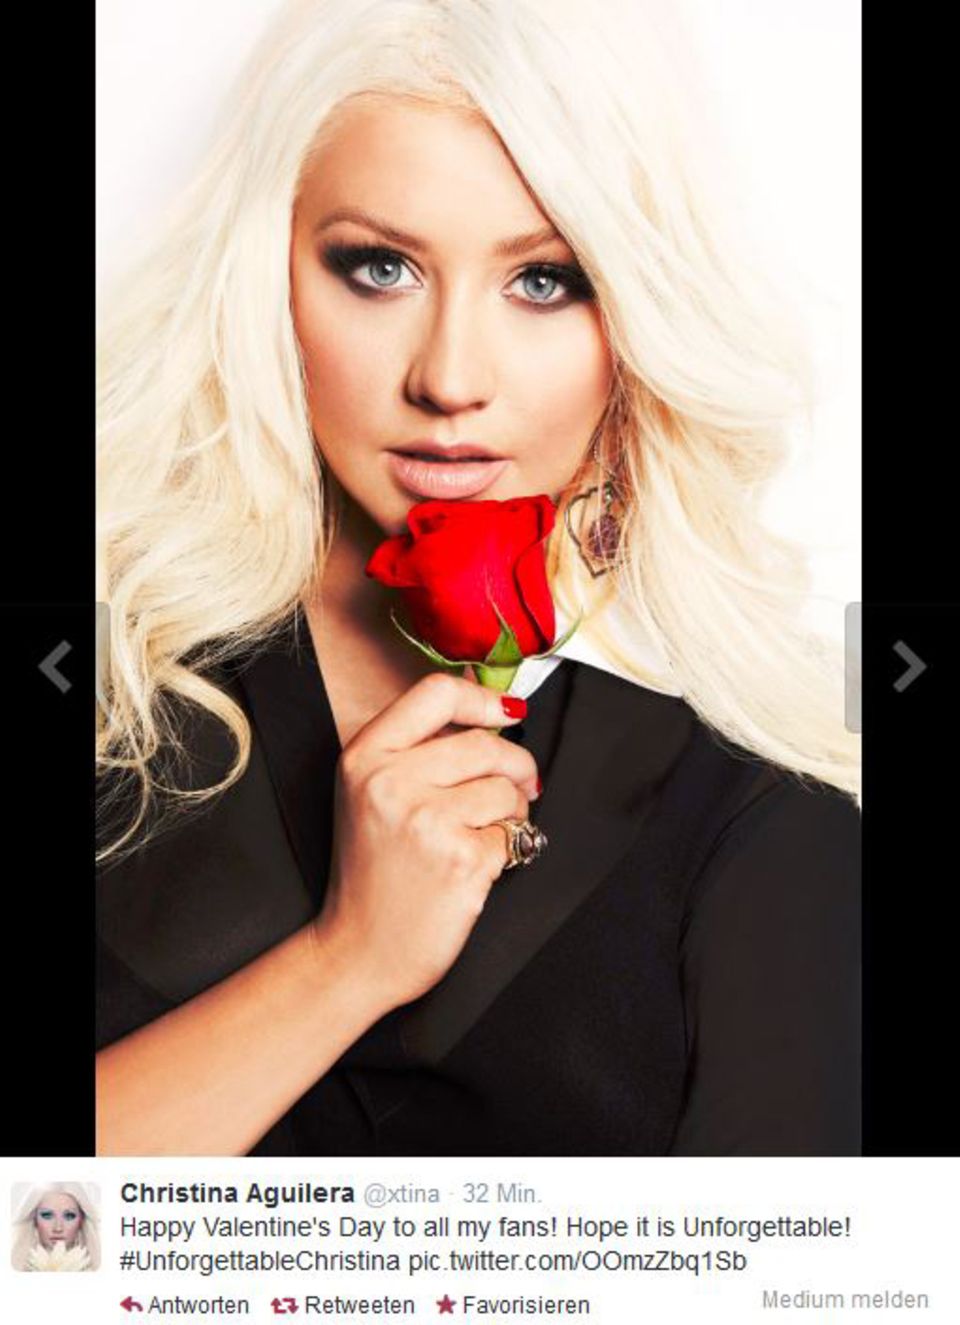 Klassich mit roter Rose zeigt sich Christina Aguilera ihren Fans.